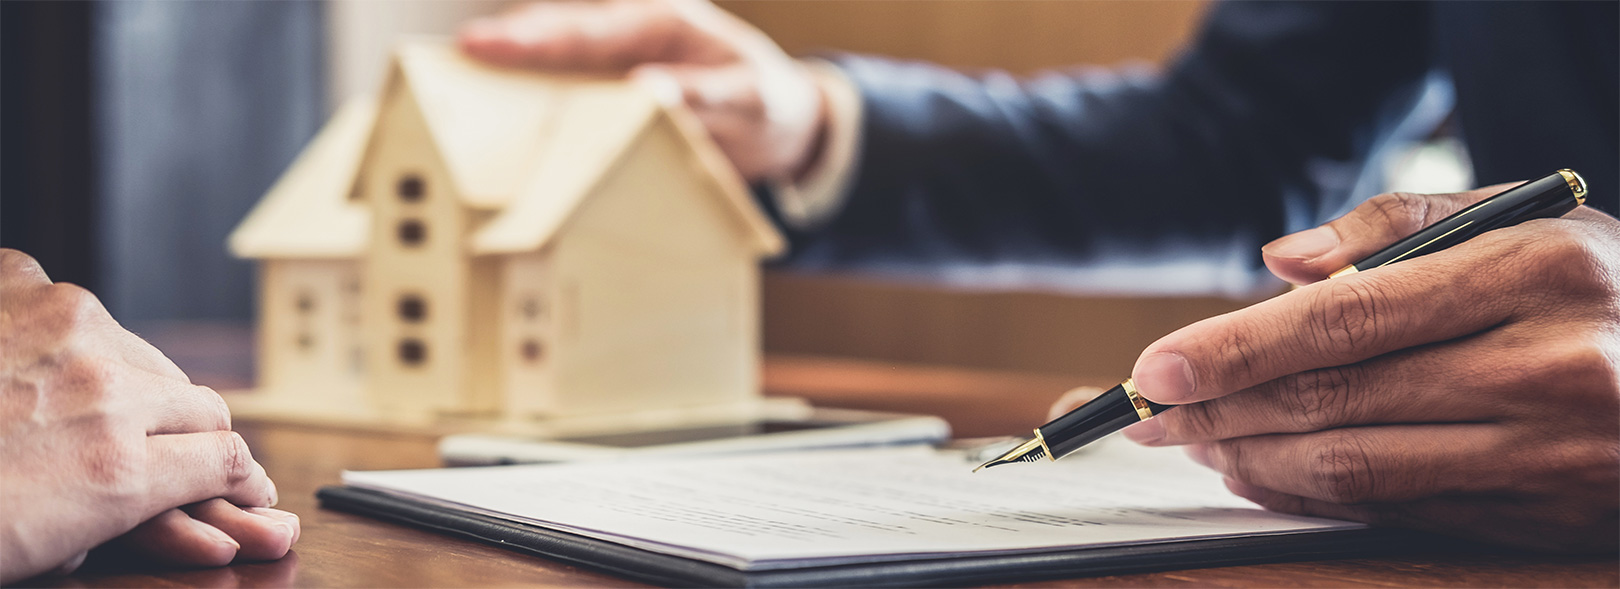 Prêt hypothécaire : les critères et les étapes à suivre